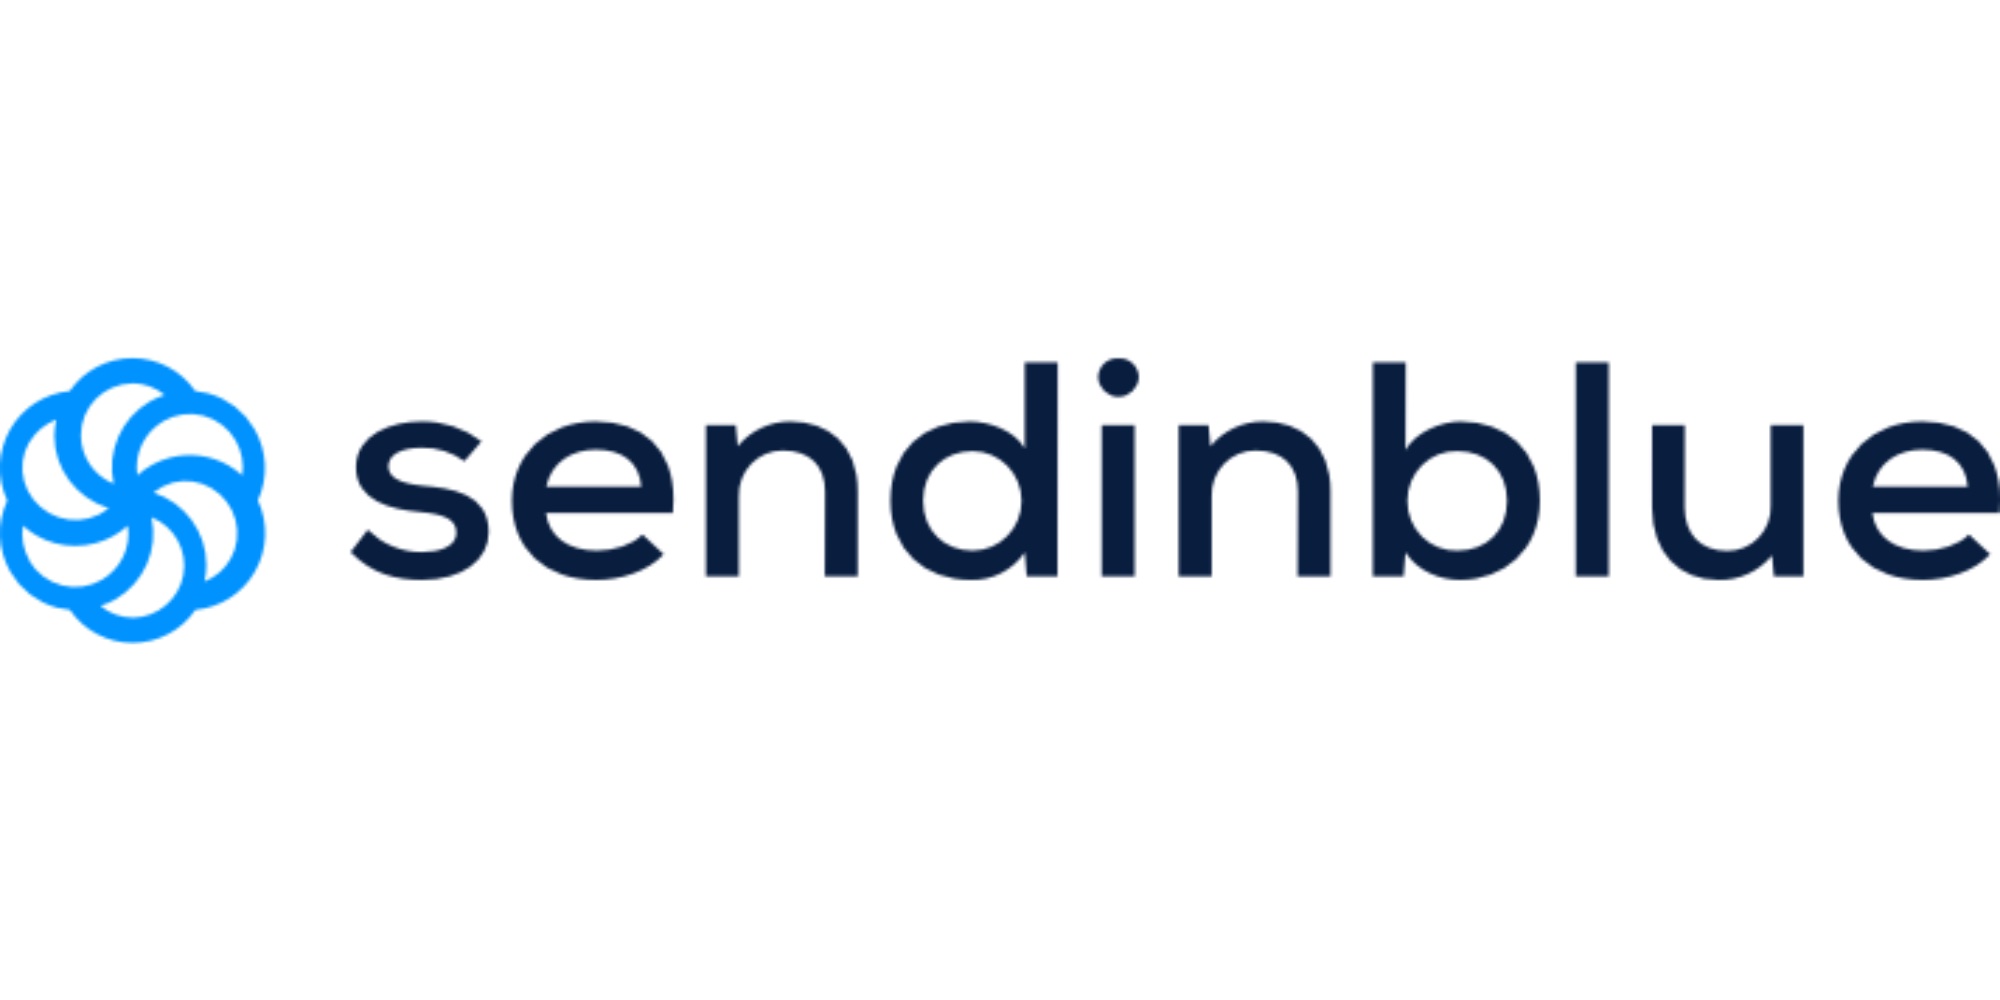 Sendinblue is a great Mailchimp alternative for nonprofits